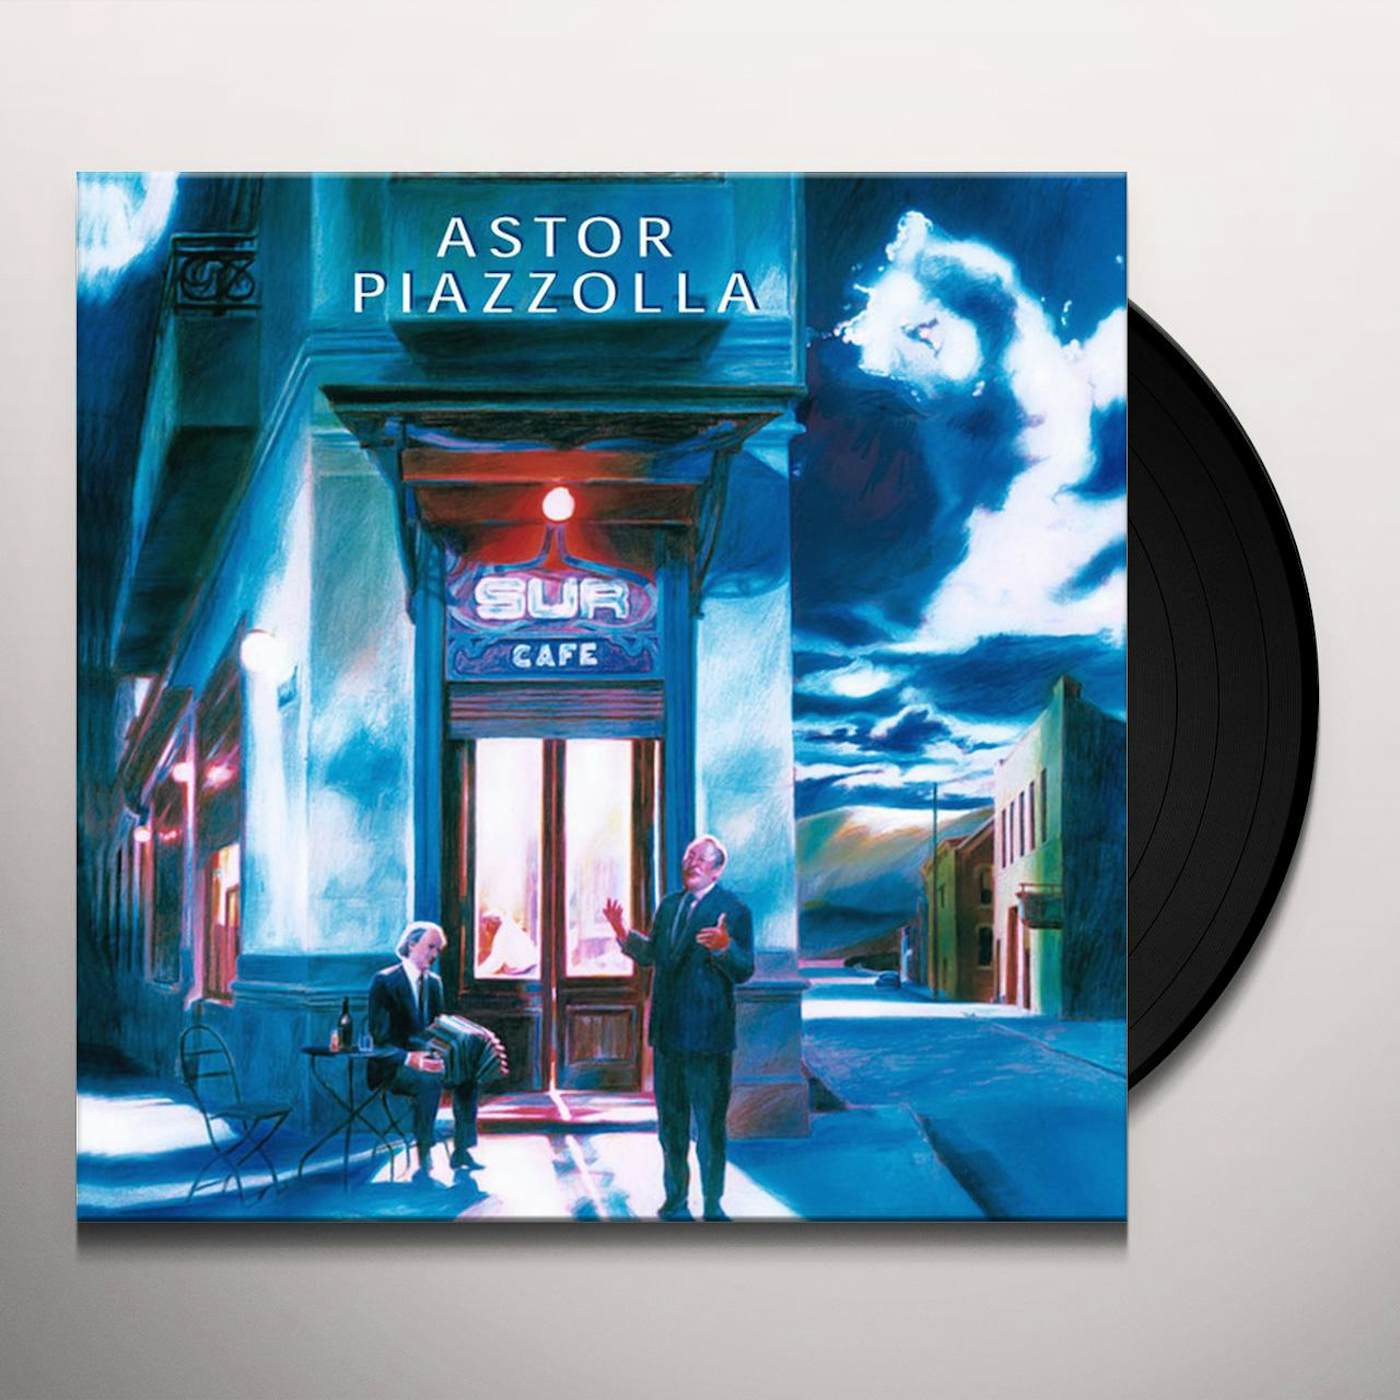 Astor Piazzolla Sur Vinyl Record